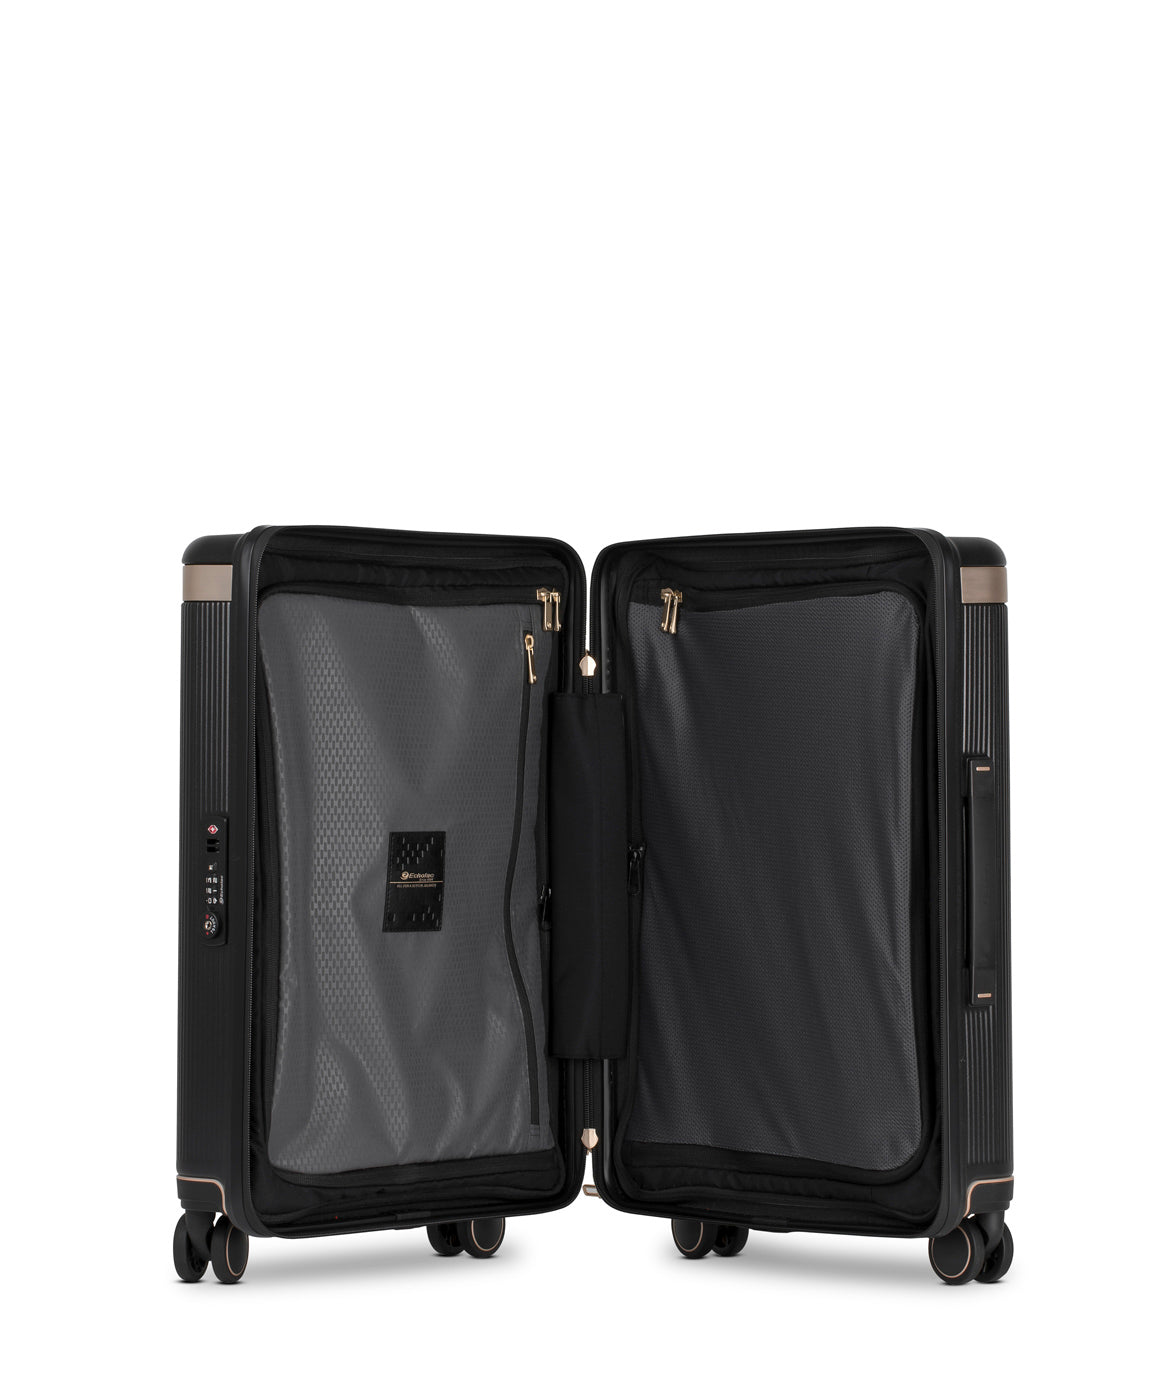 Echolac Dynasty Suitcase, Small 55 cm, Dunkelgrau